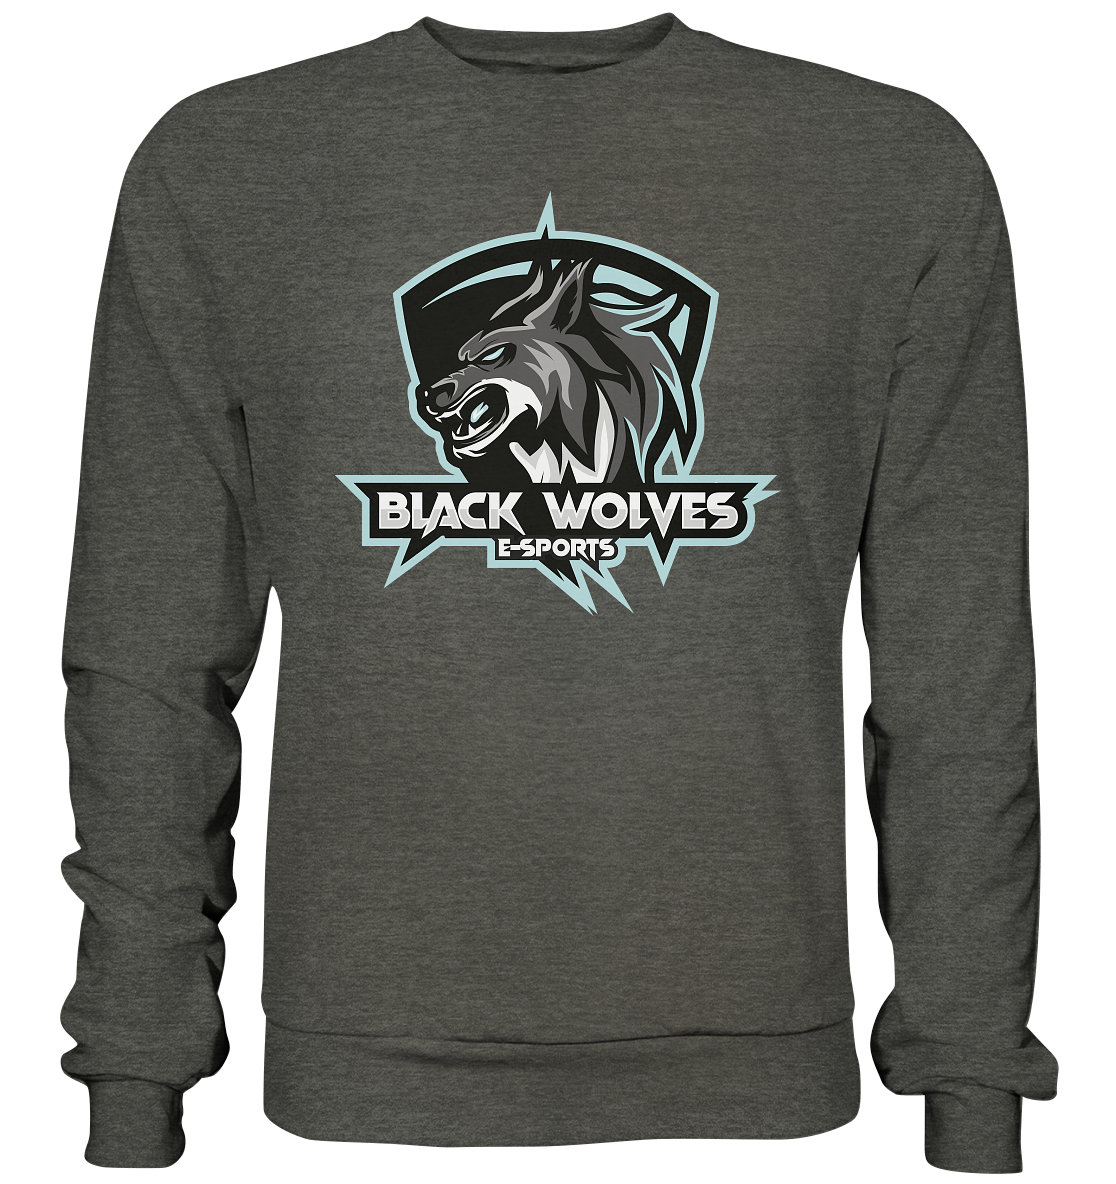 BLACK WOLVES E-SPORTS - Basic Sweatshirt